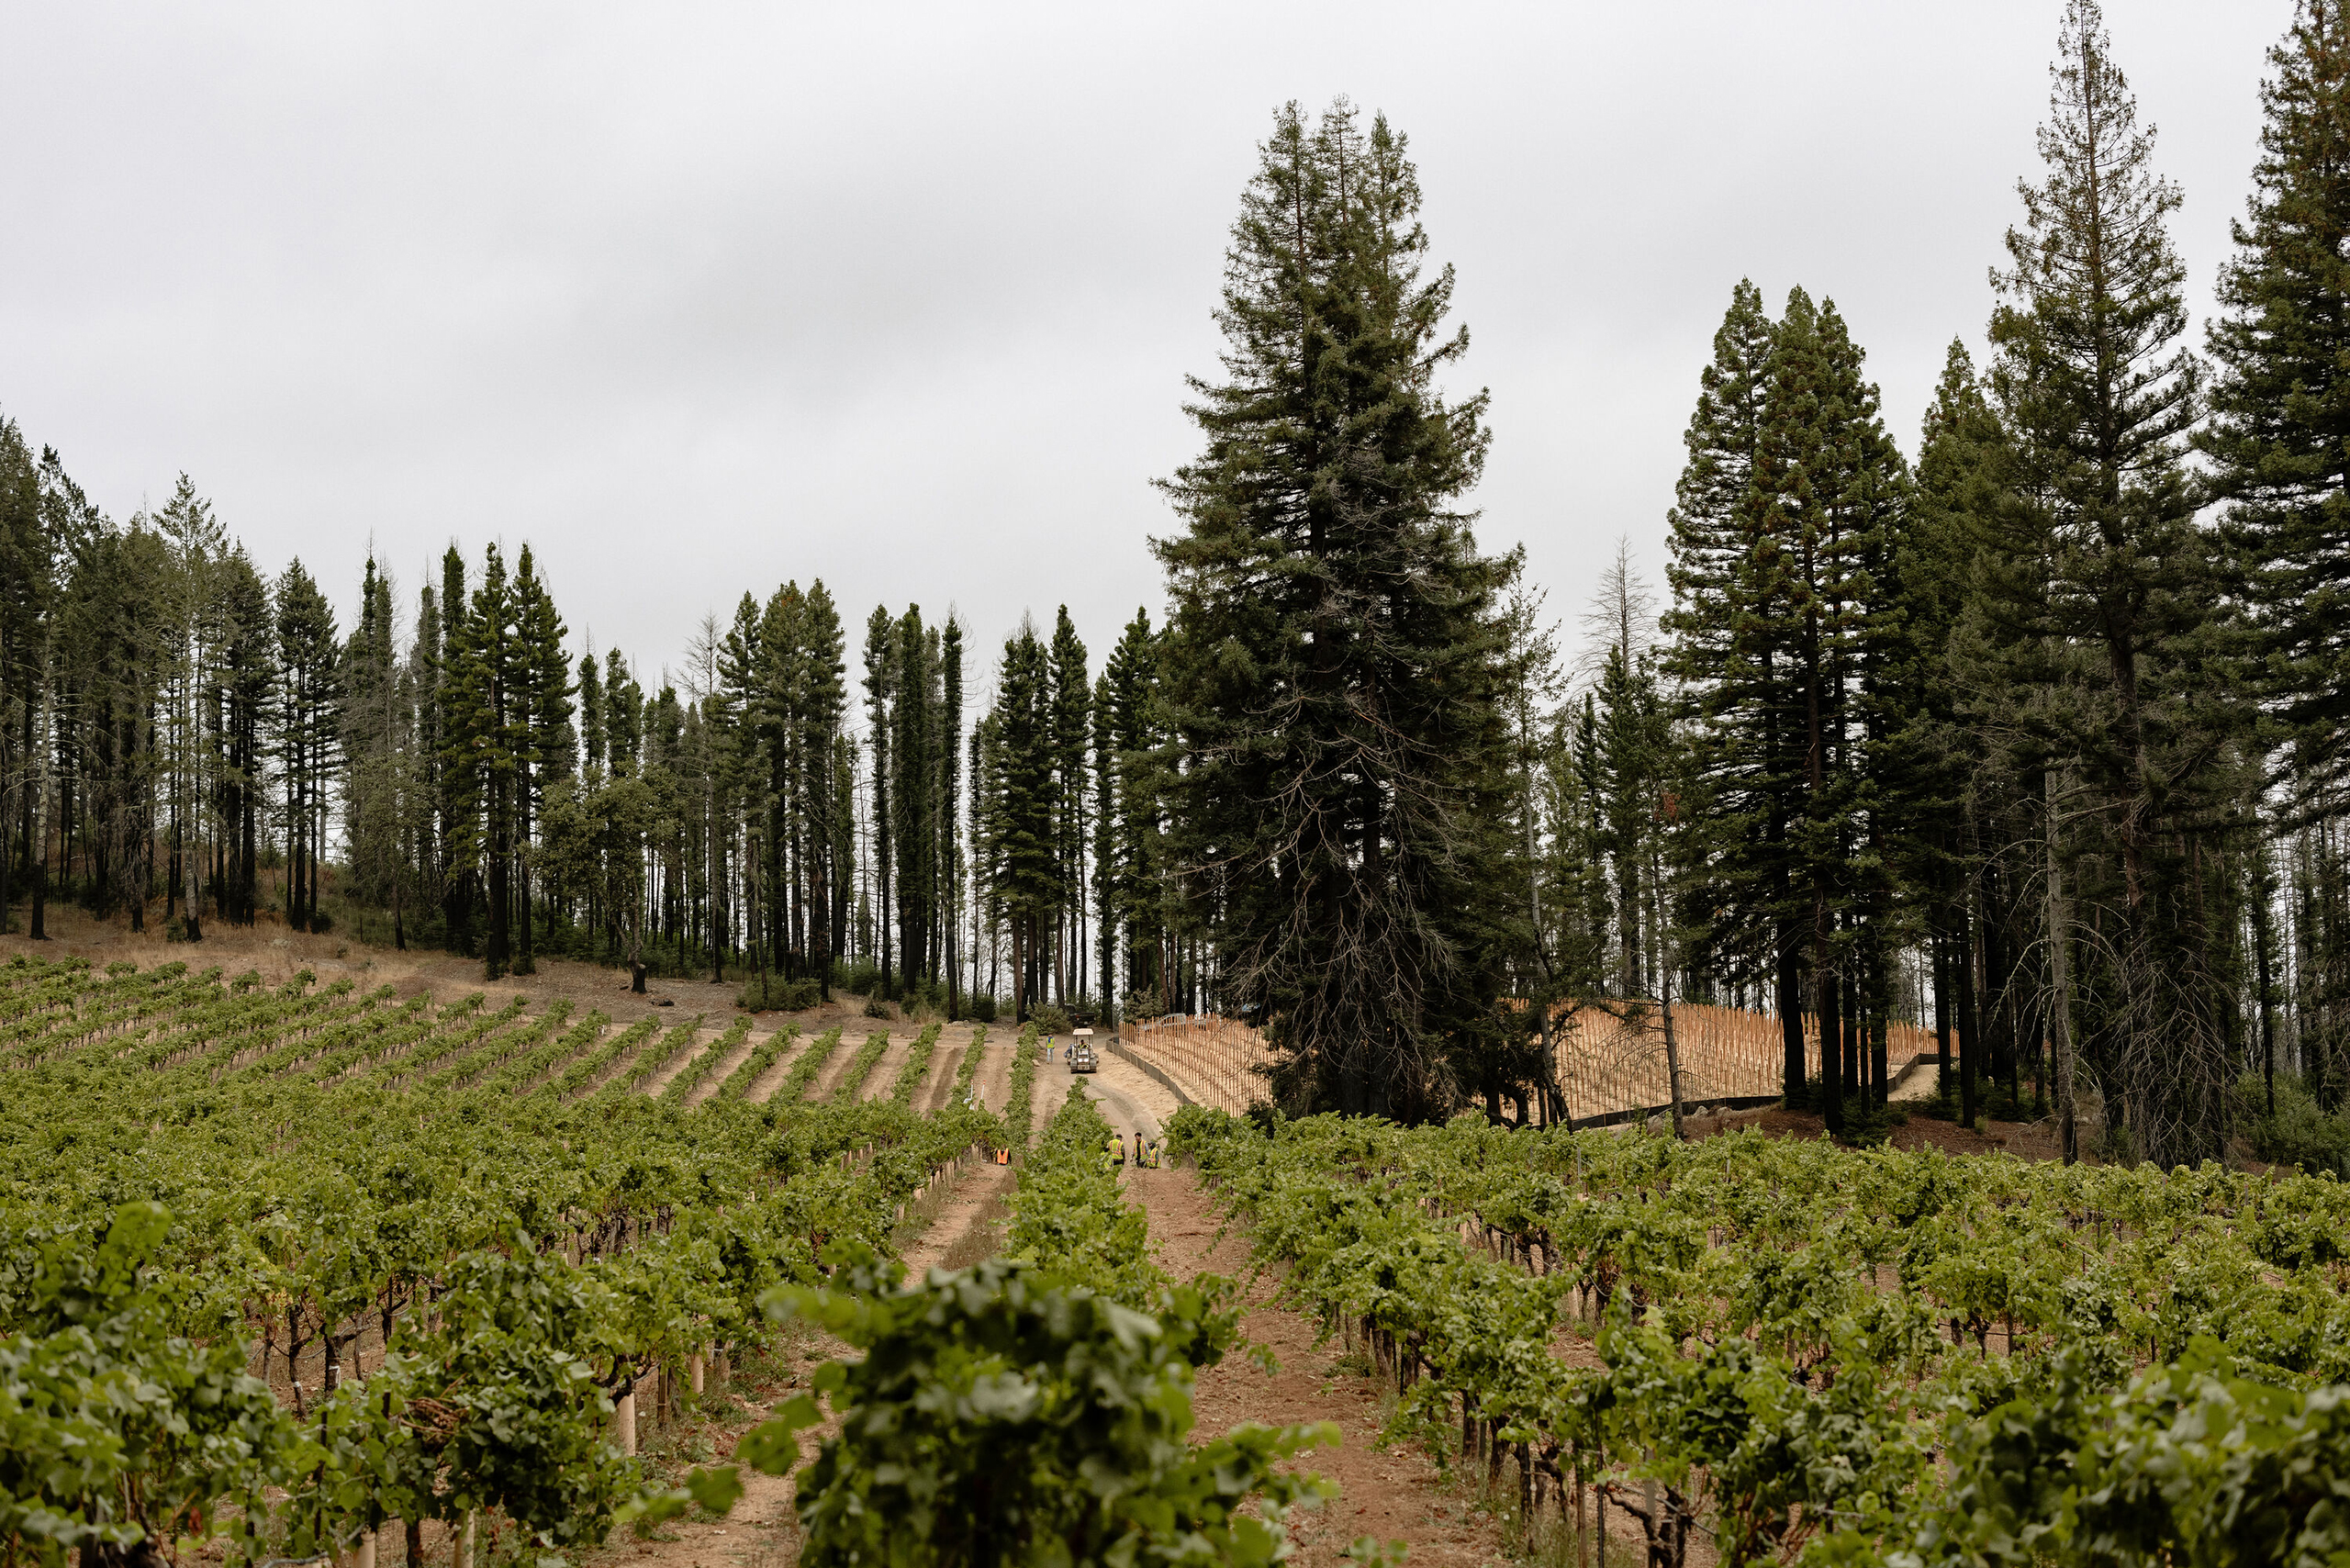 The vineyards at Stony Hill.